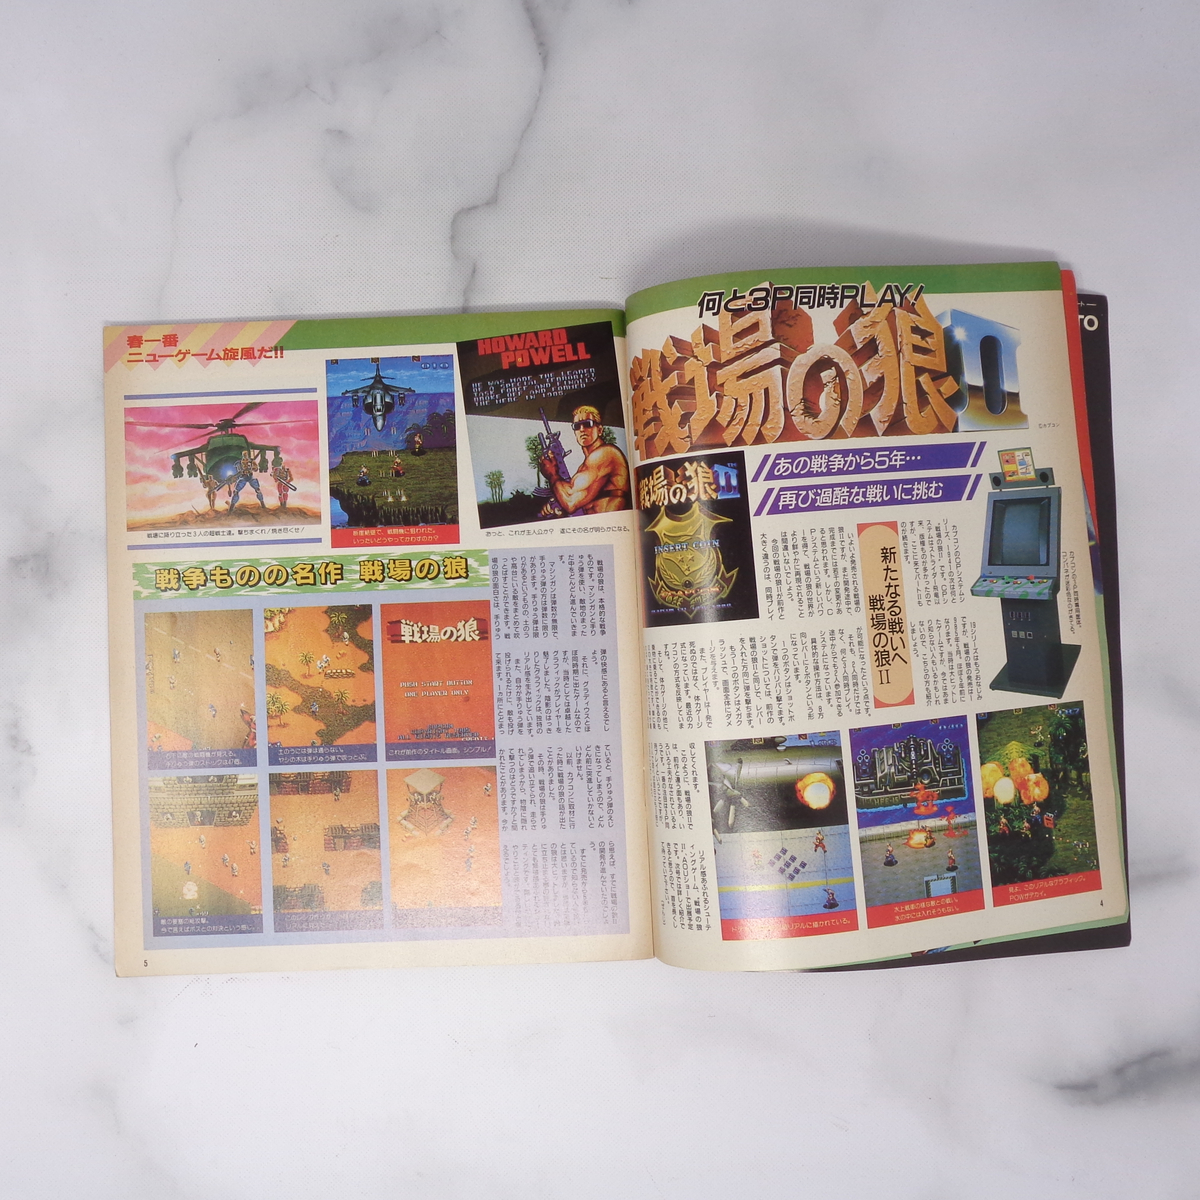 月刊GAMEST ゲーメスト 1990年4月号No.43 綴込付録カセットレーベル付き /ファイナルファイト/グラディウス3/ゲーム雑誌[Free Shipping]_画像9